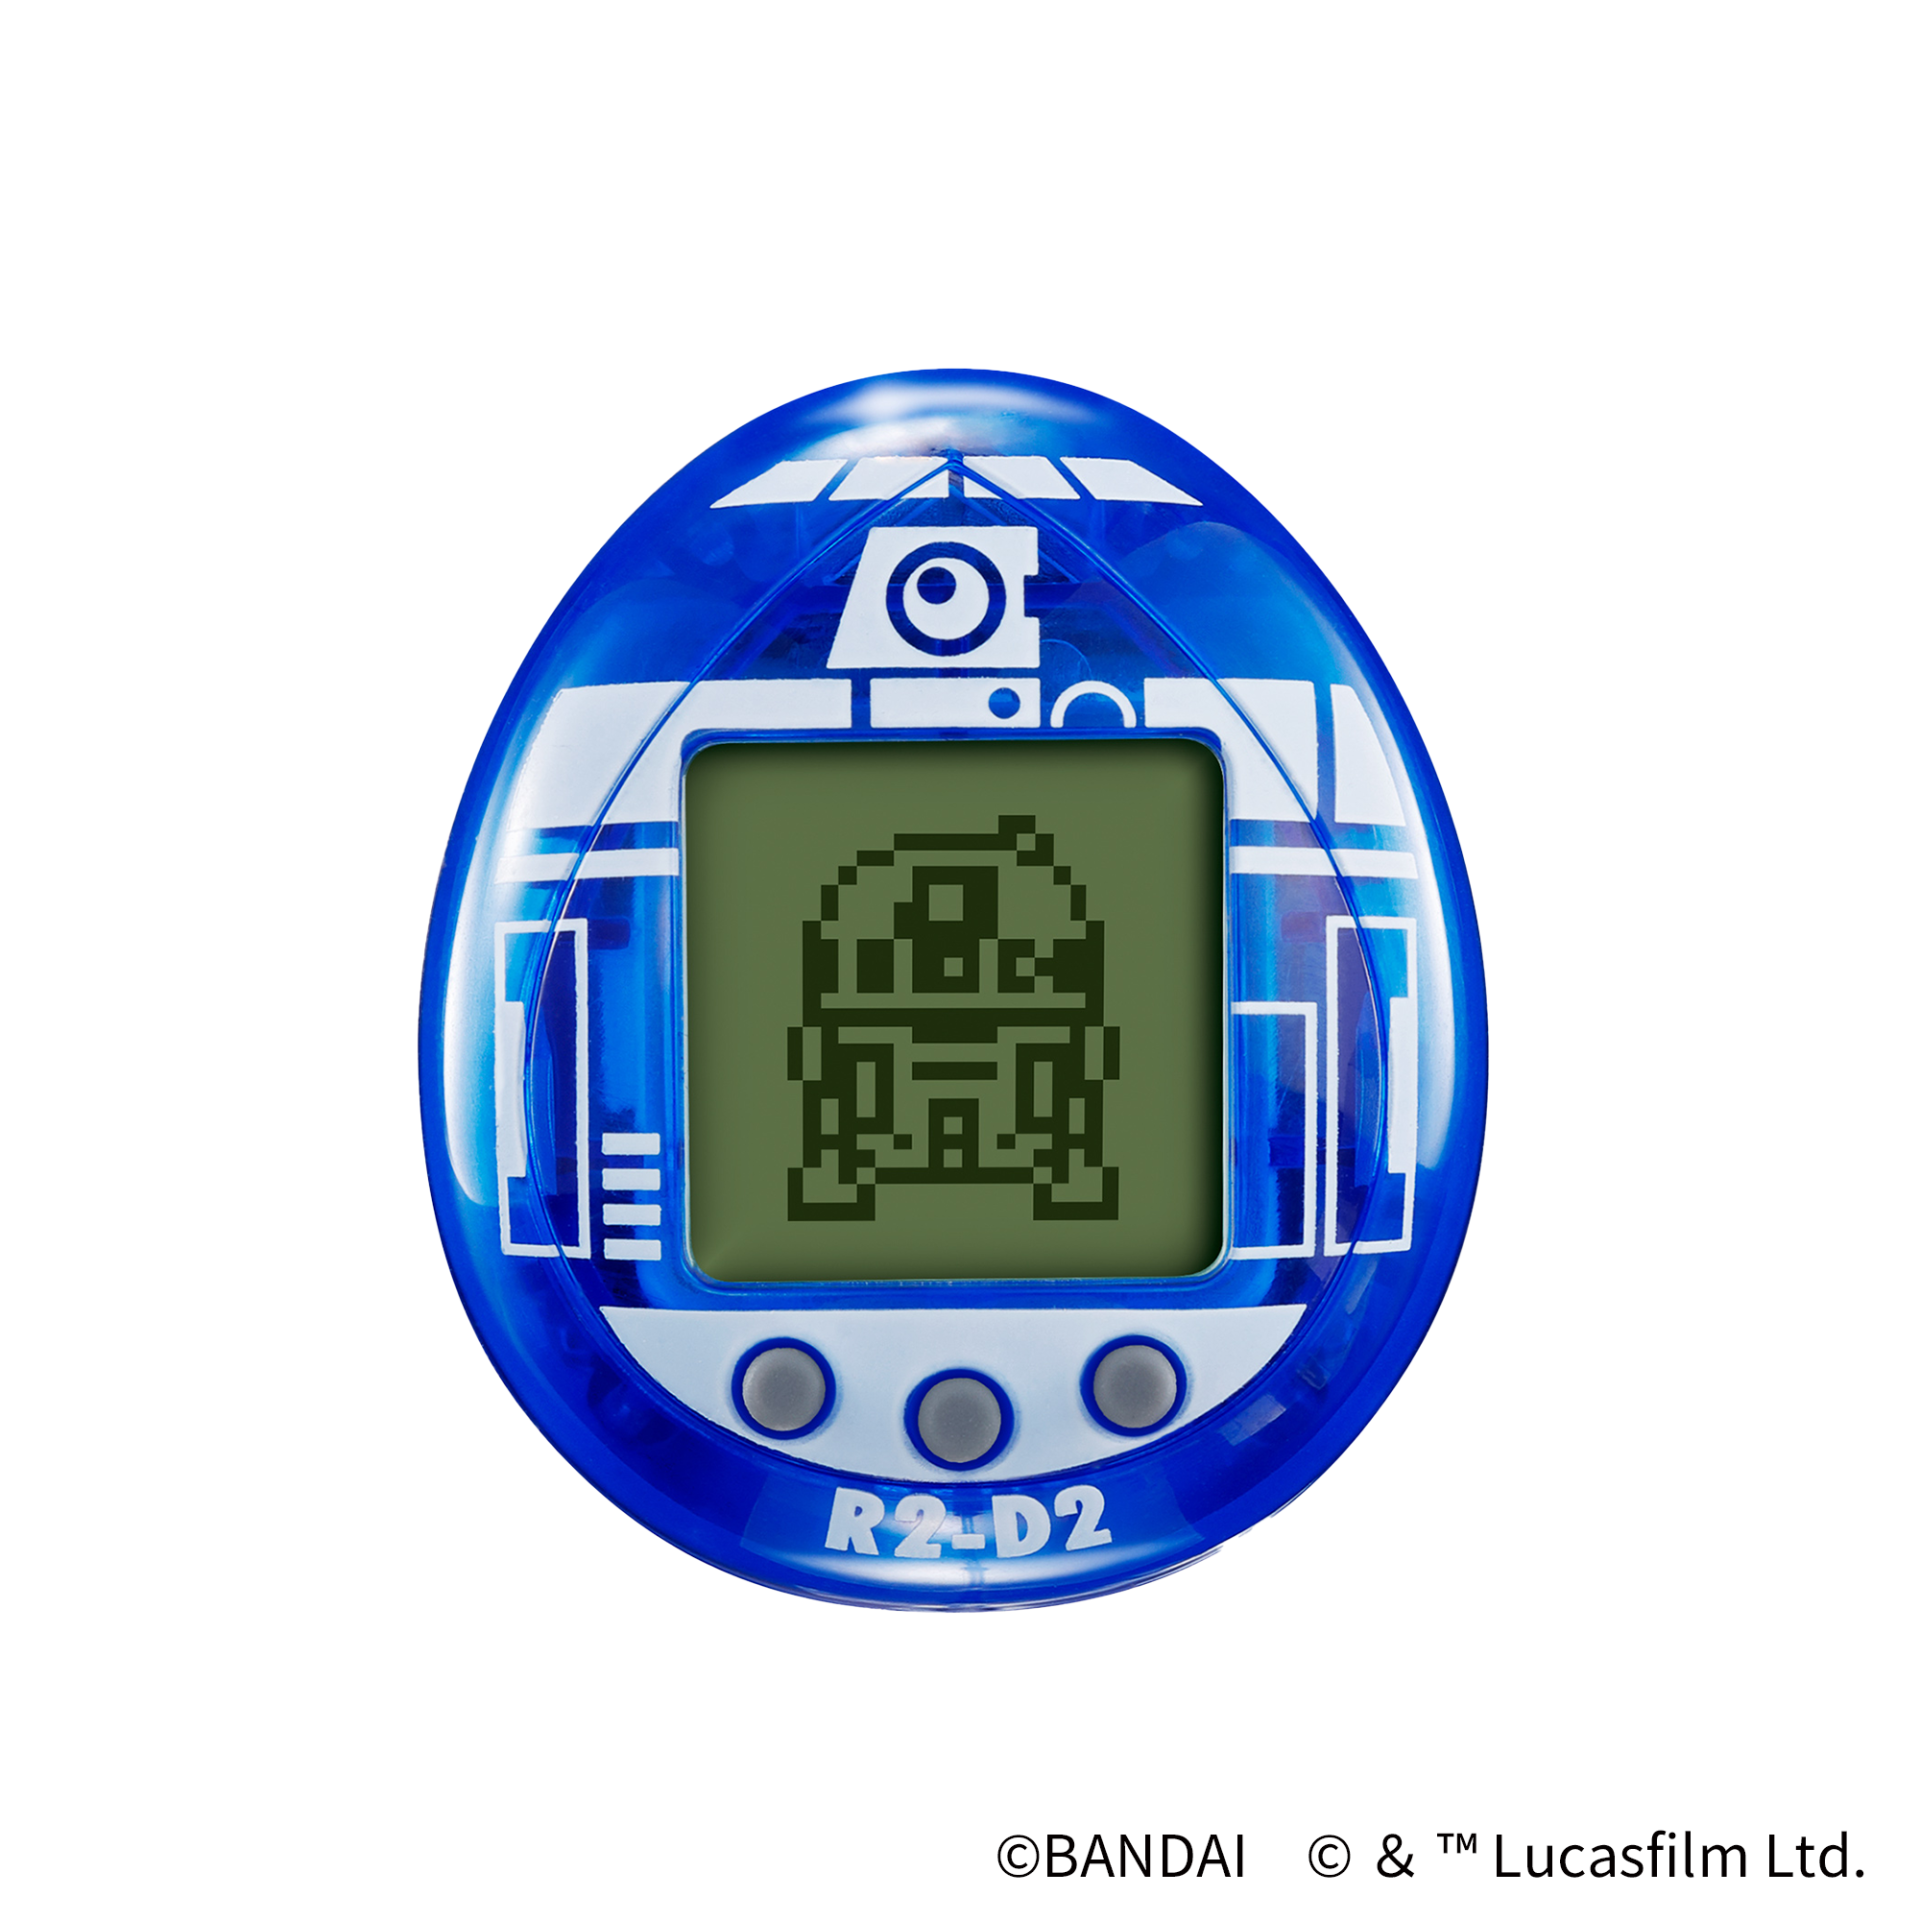 Estrellas Wars R2-D2 Tamagotchi - Holograma (azul translúcido)